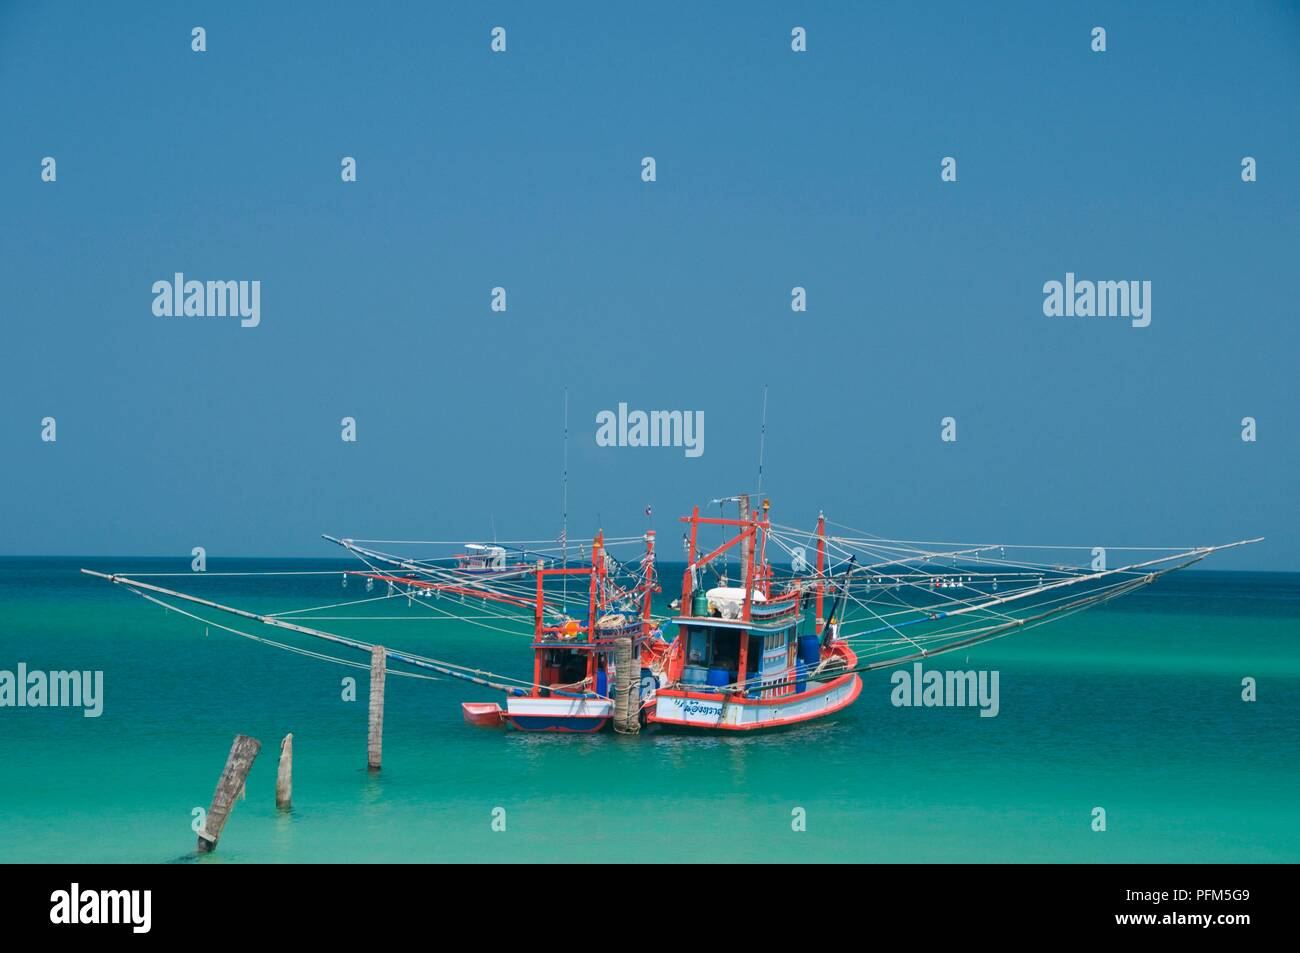 Thailand, Ko Phangan, Ao Chalok Lam, fishing boat at sea Stock Photo